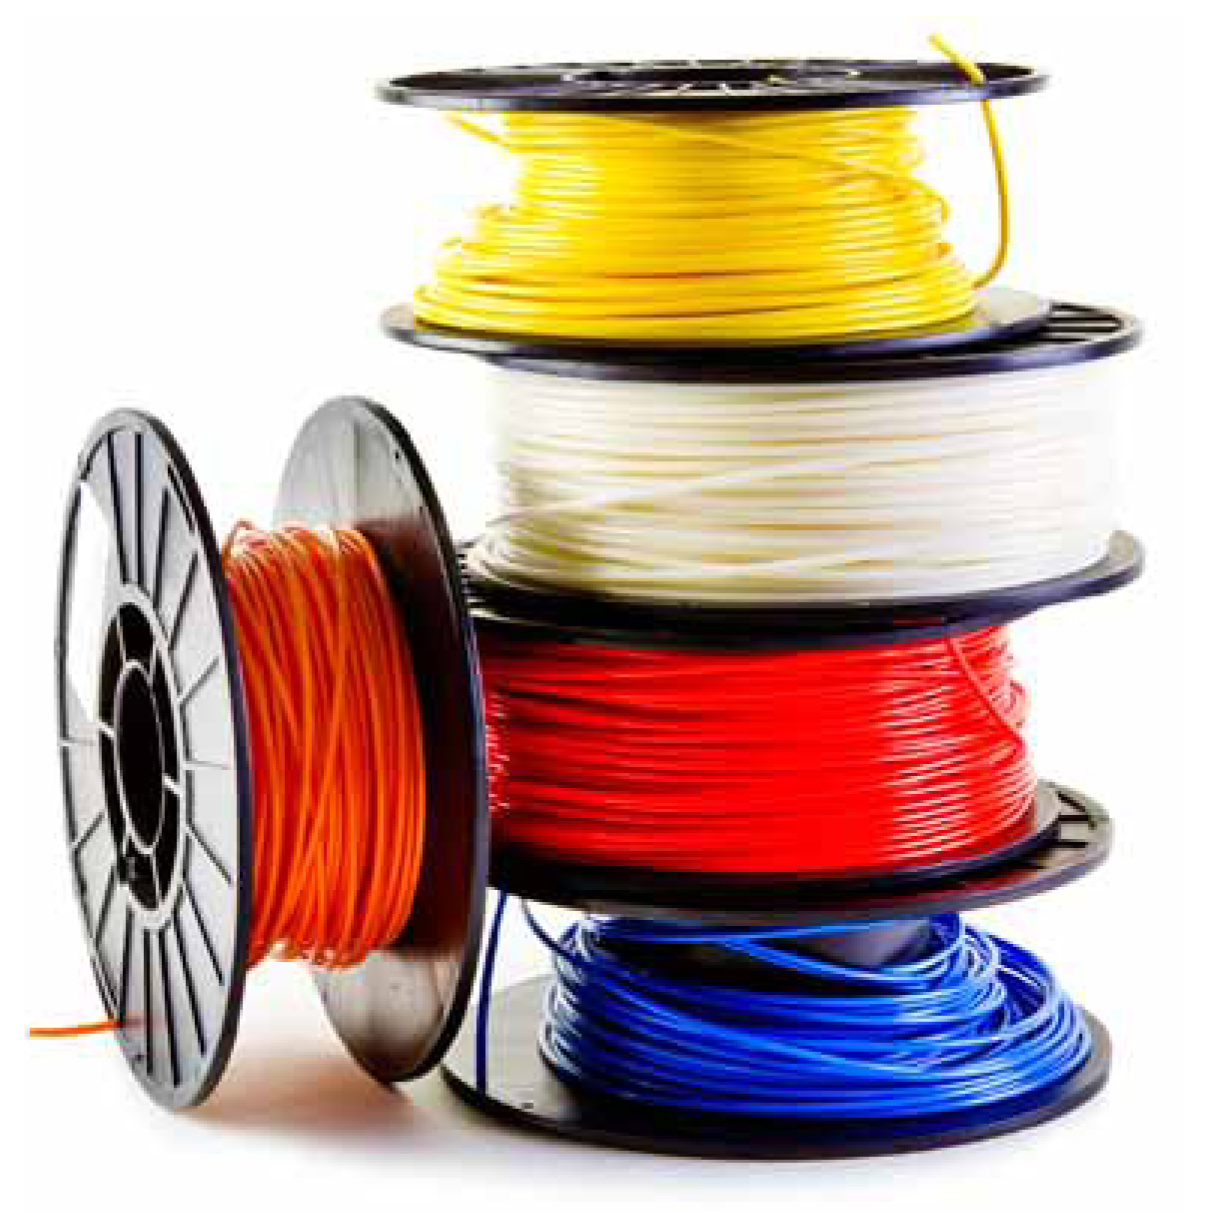 3D printer filaments come in small spool sizes - 13387 1